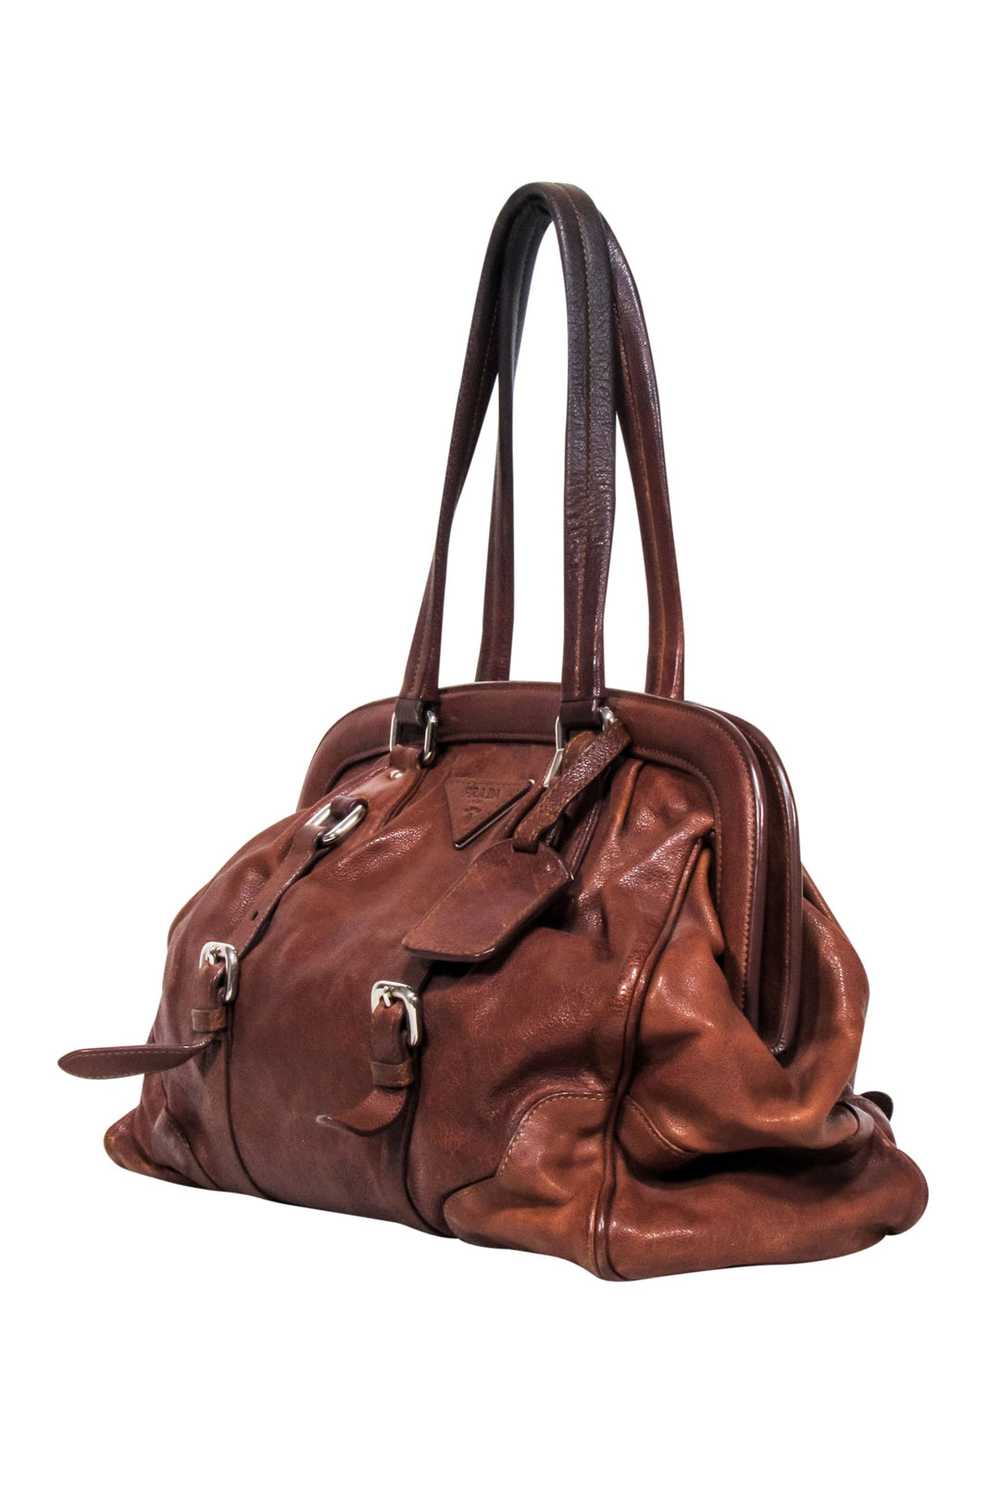 Prada - Brown "Vitello Shine" Handbag - image 2